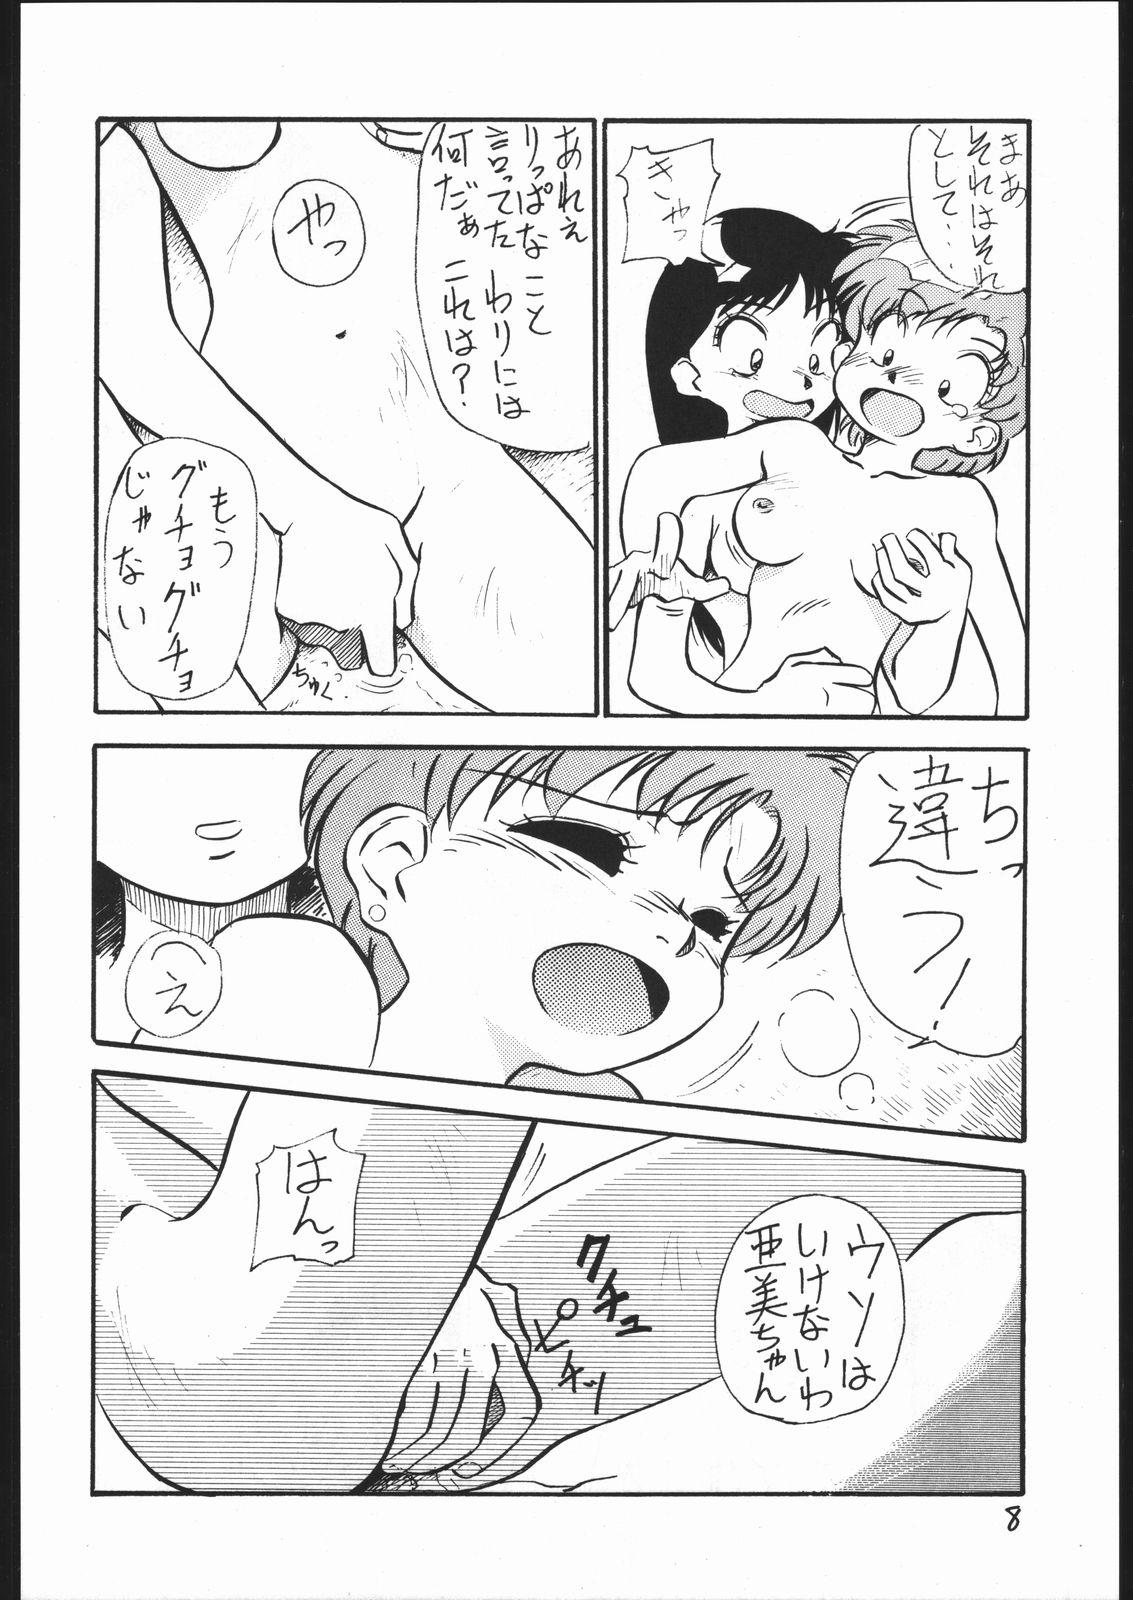 Cumshots V・H・S・M Vol. 1 - Sailor moon Blowjob - Page 7